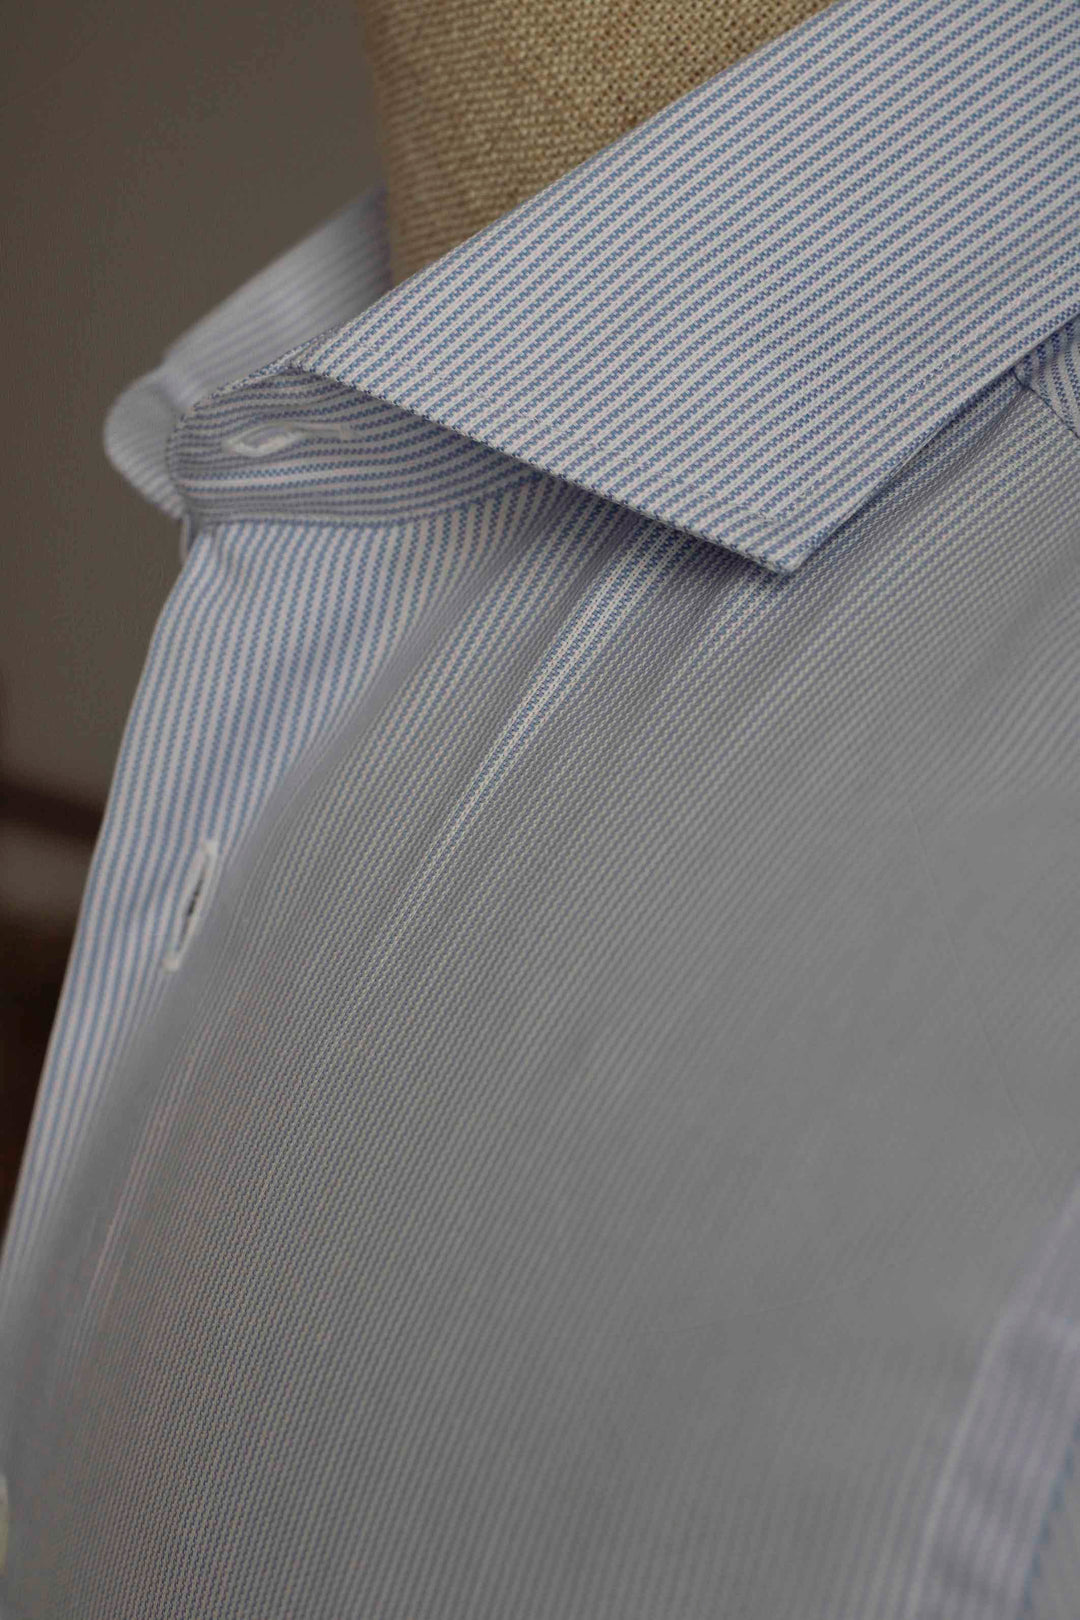 Blue Thousand Stripes Dress Shirt Without Cufflinks